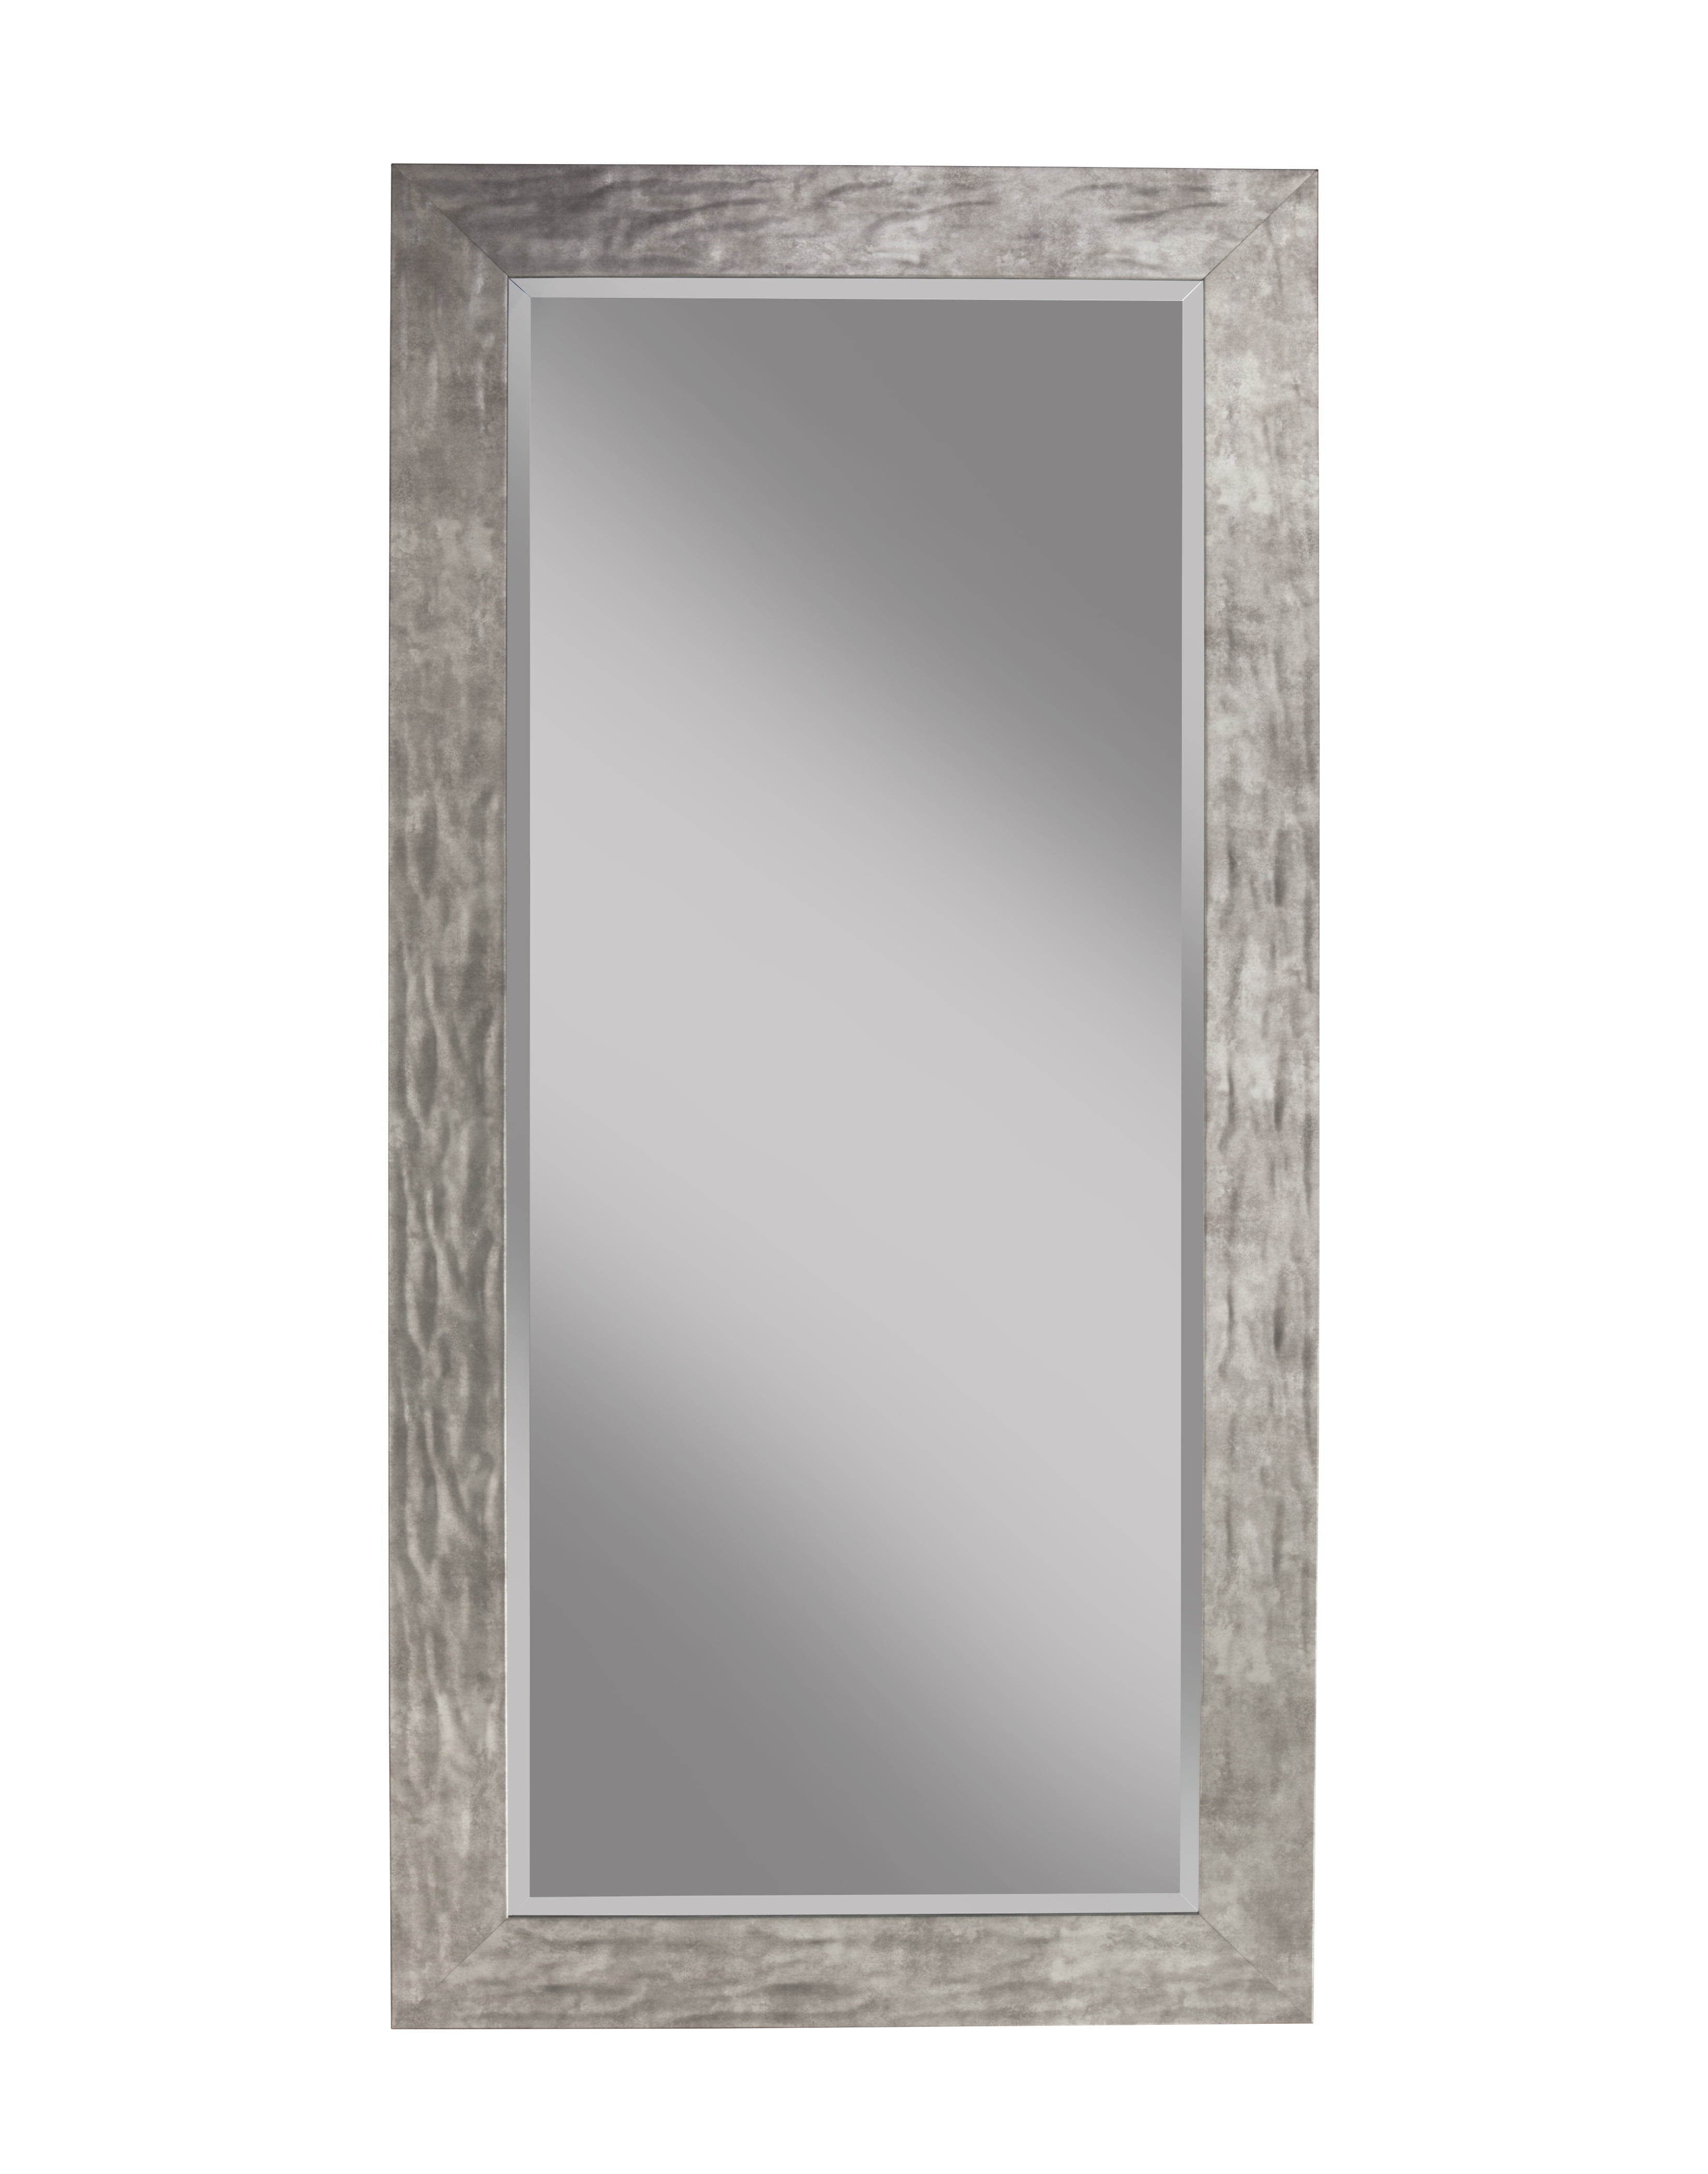 Martin Svensson Home Glam 63.5 x 29.5 Metallic Silver Full Length Leaner Mirror